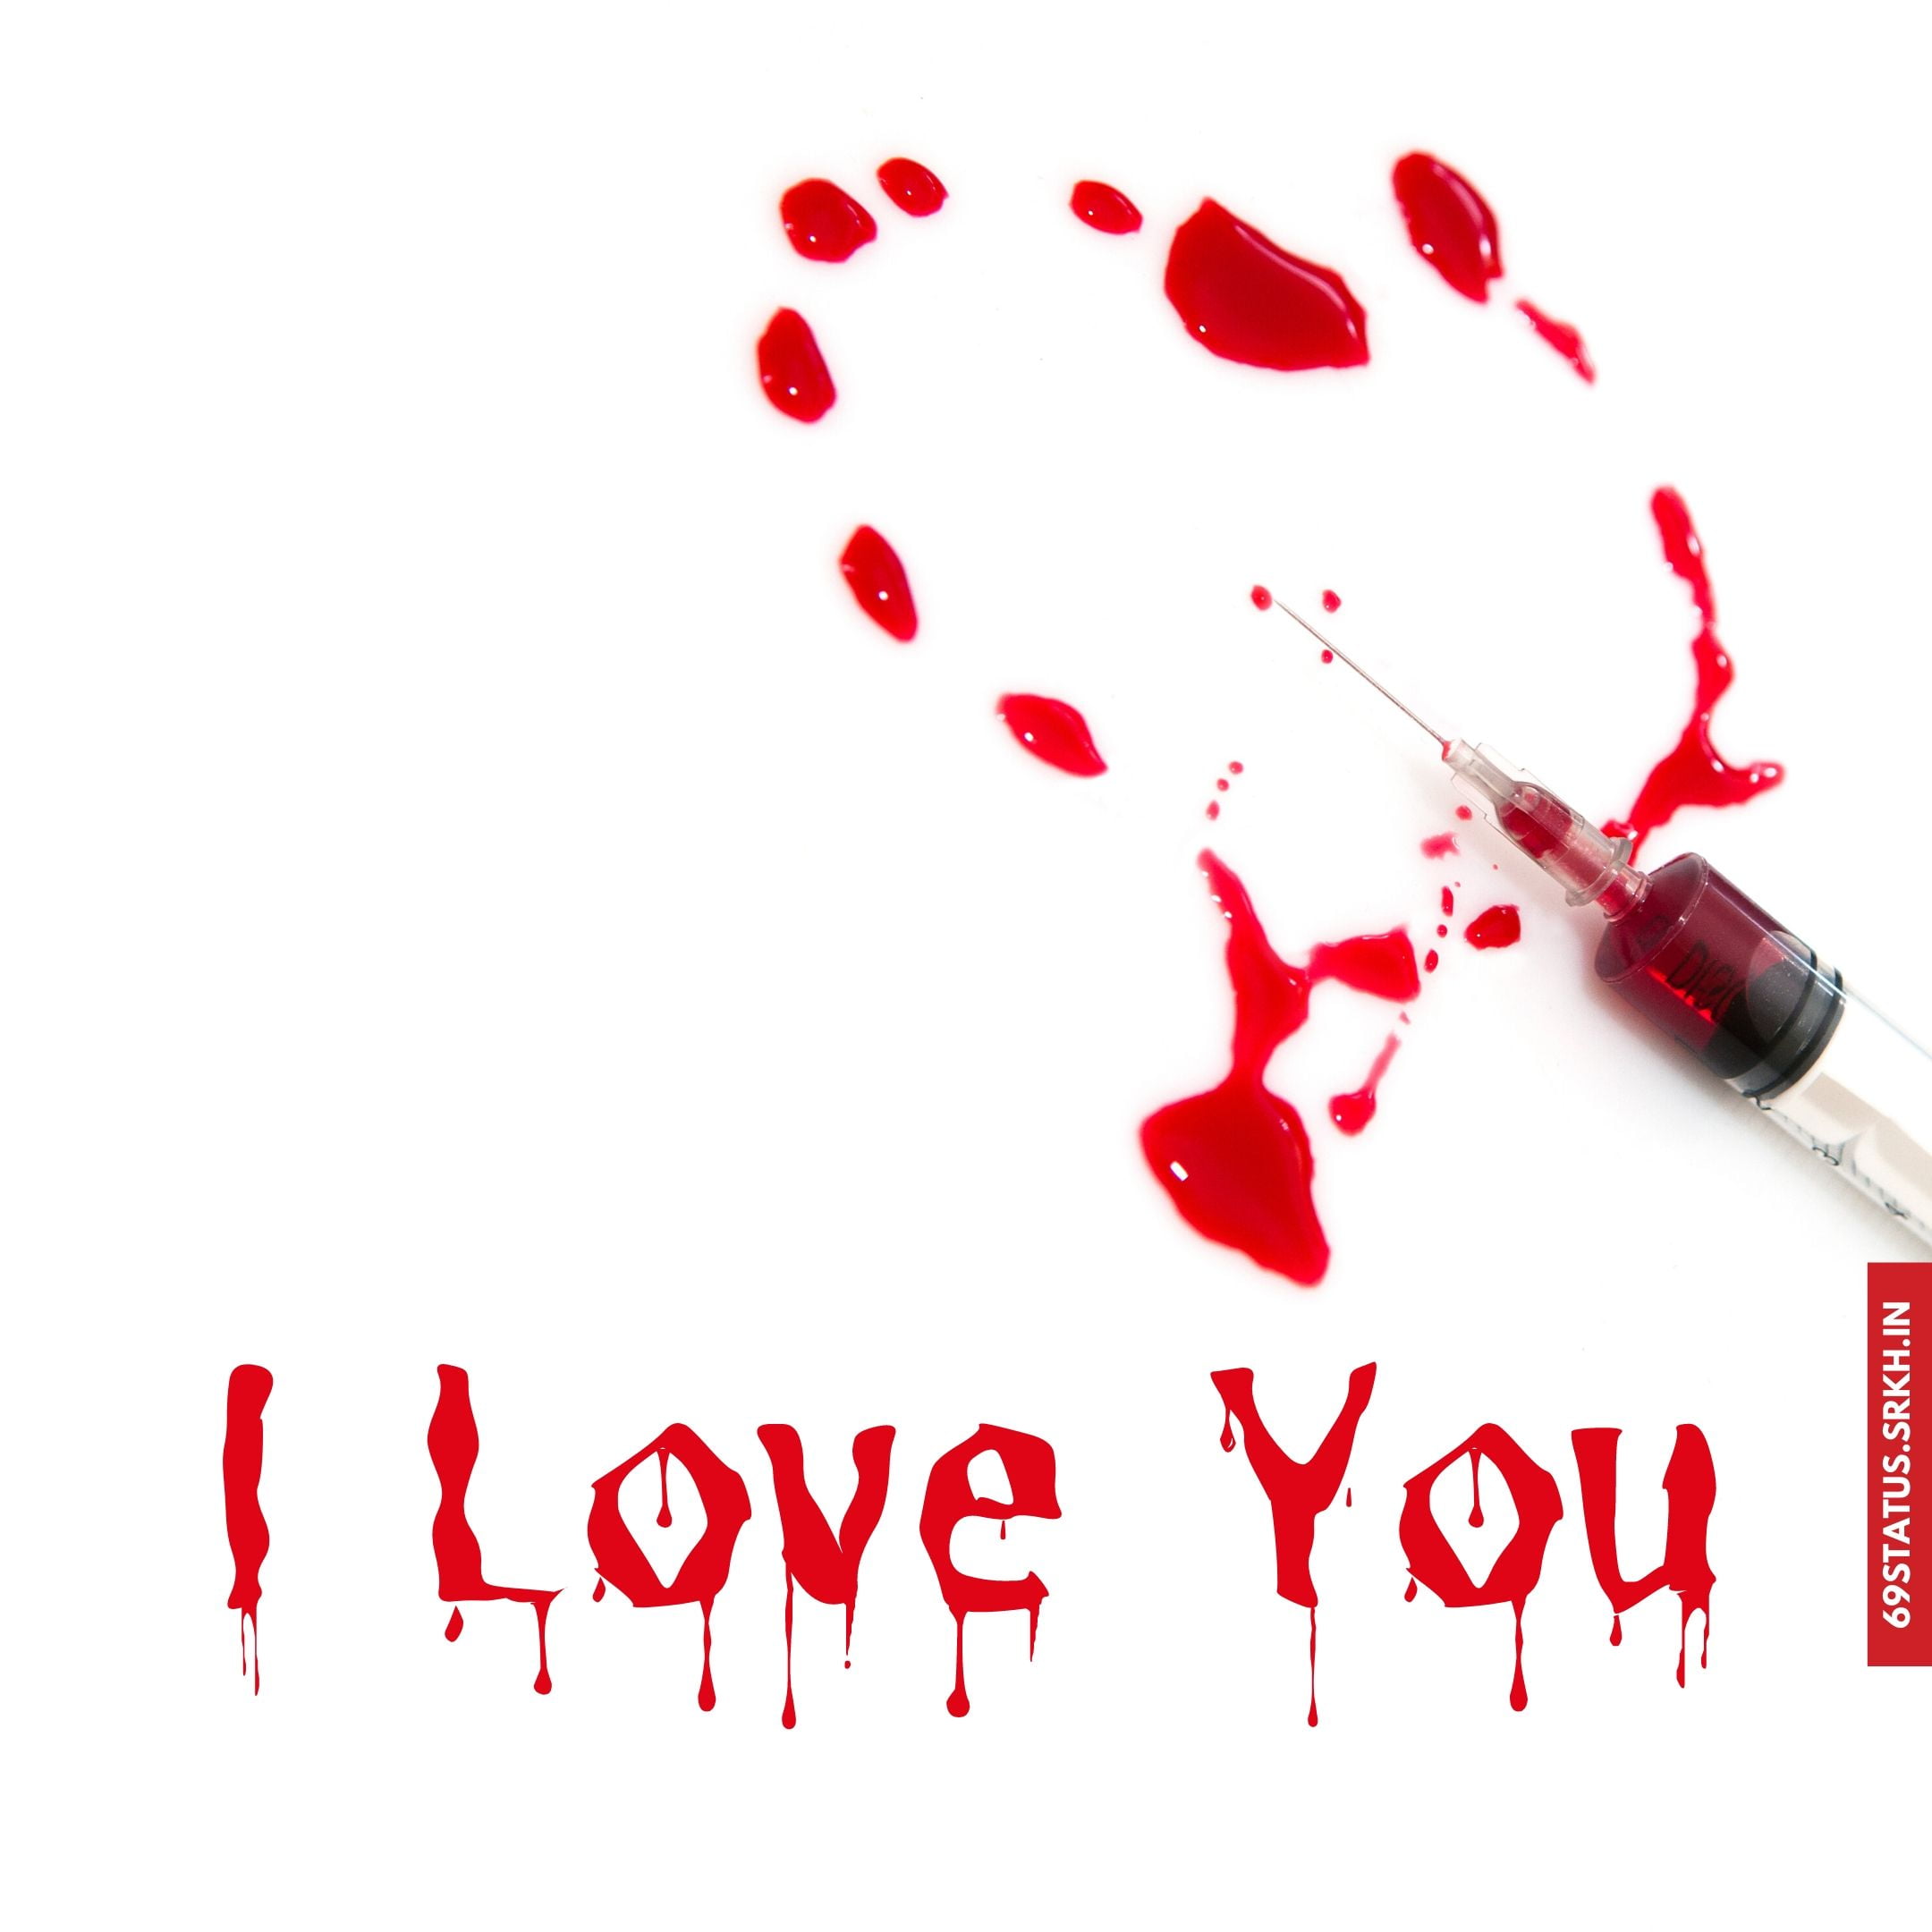 🔥 I Love You blood images Download free - Images SRkh